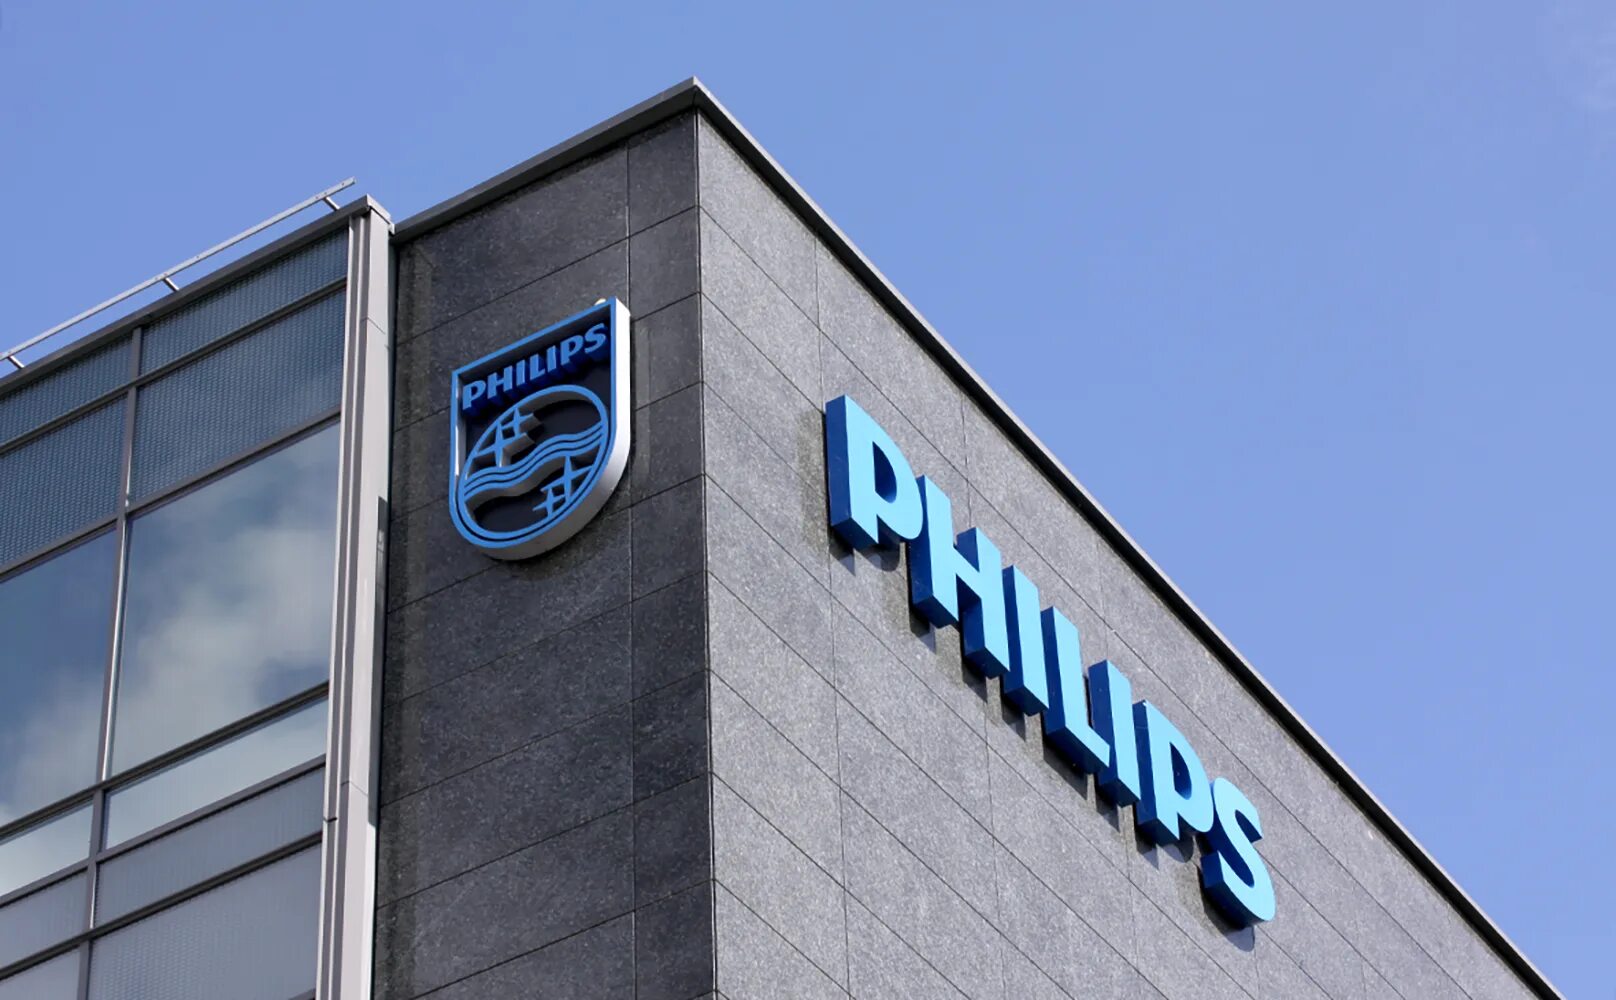 Компания Филипс Нидерланды. Royal Philips Electronics. Philips штаб квартира. Филипс здание. Где находится филипс